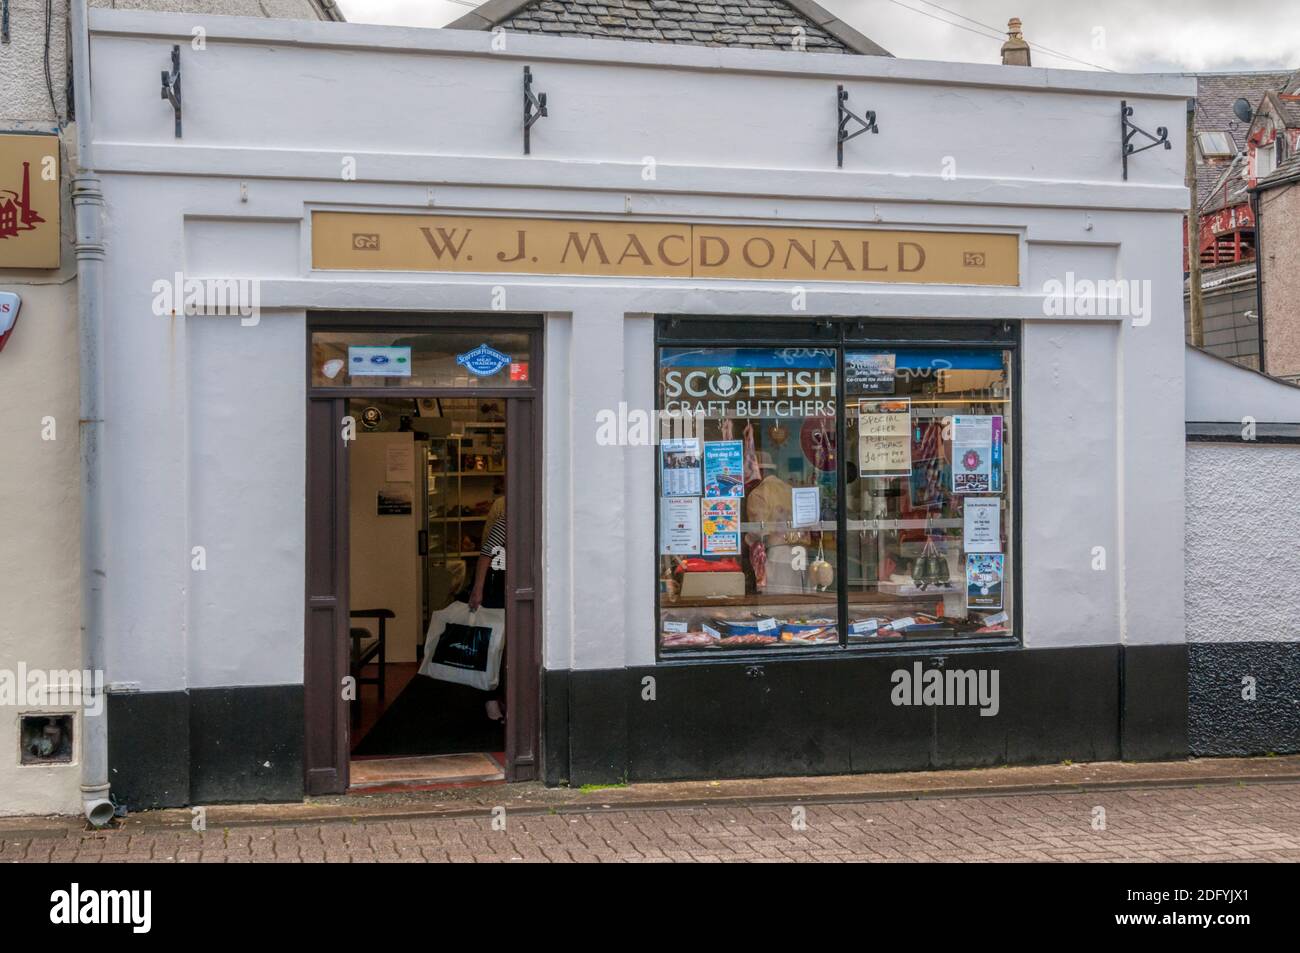 Il negozio di W. J. Macdonald, macellai artigianali scozzesi a Stornoway sull'isola di Lewis nelle Ebridi esterne. Foto Stock